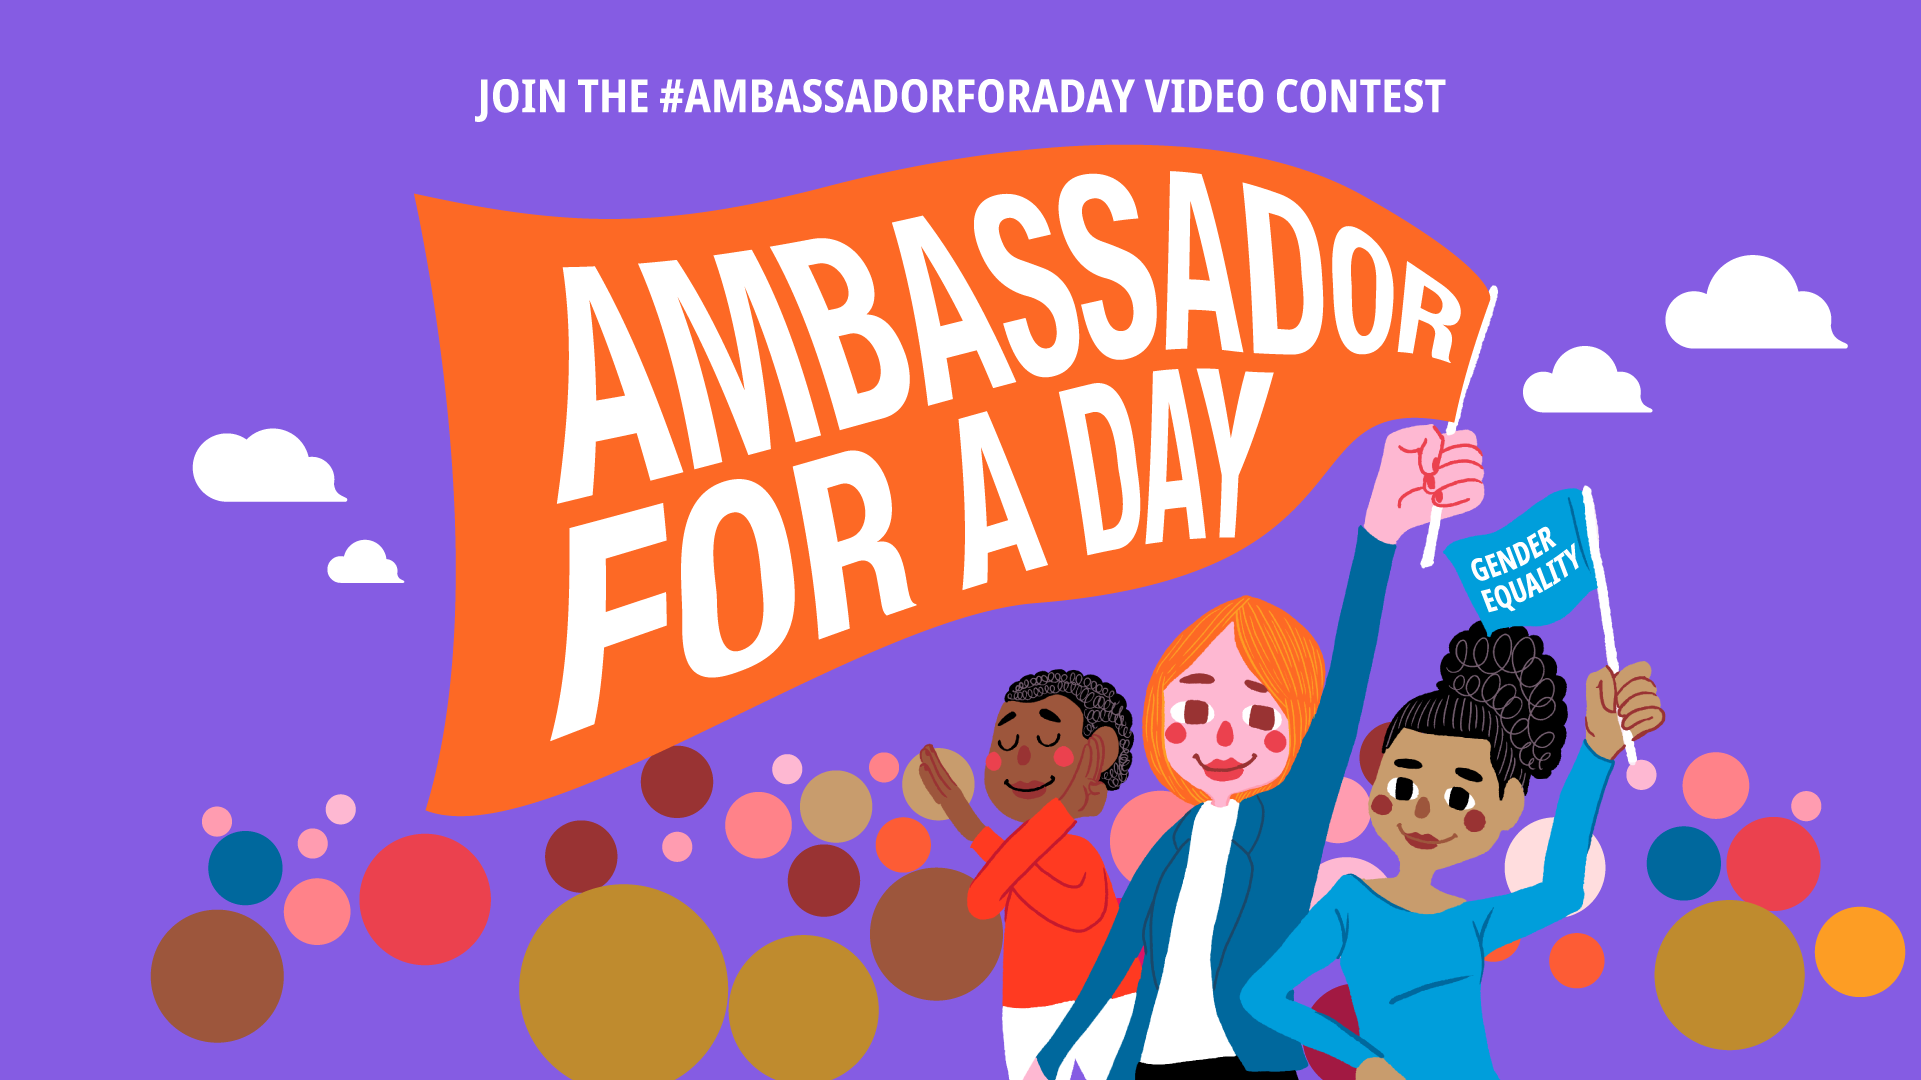 ร่วมประกวดคลิปวิดีโอ Ambassador for a Day เนื่องในวันสตรีสากล พ.ศ. 2565